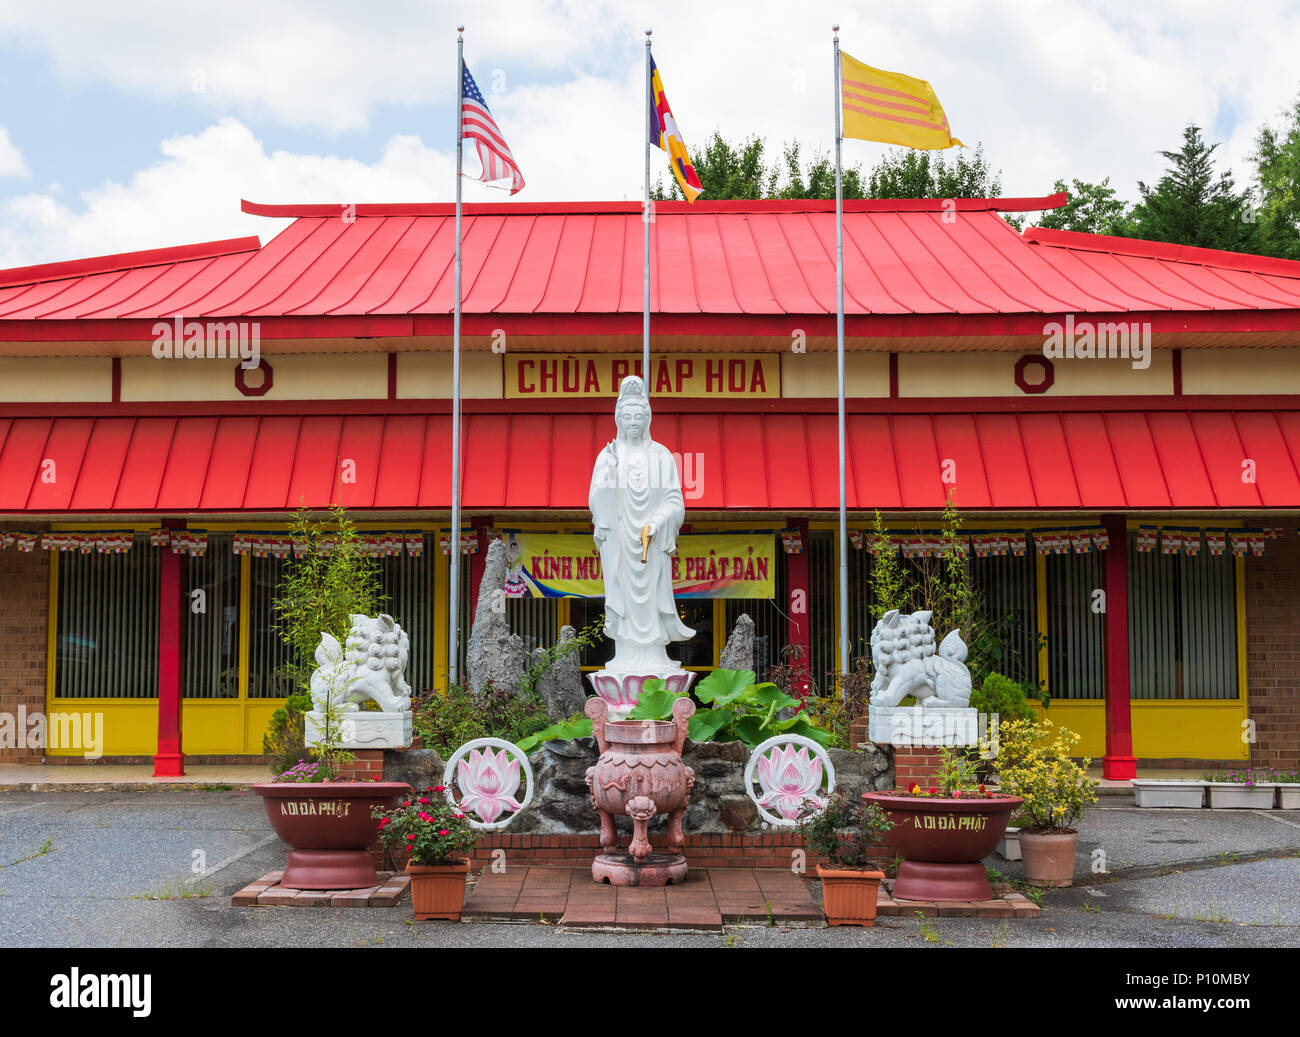 HICKORY, NC, USA-31 MAI 18 : un temple bouddhiste vietnamien, chua phap hoa, situé dans la petite ville du sud de l'hickory. Banque D'Images